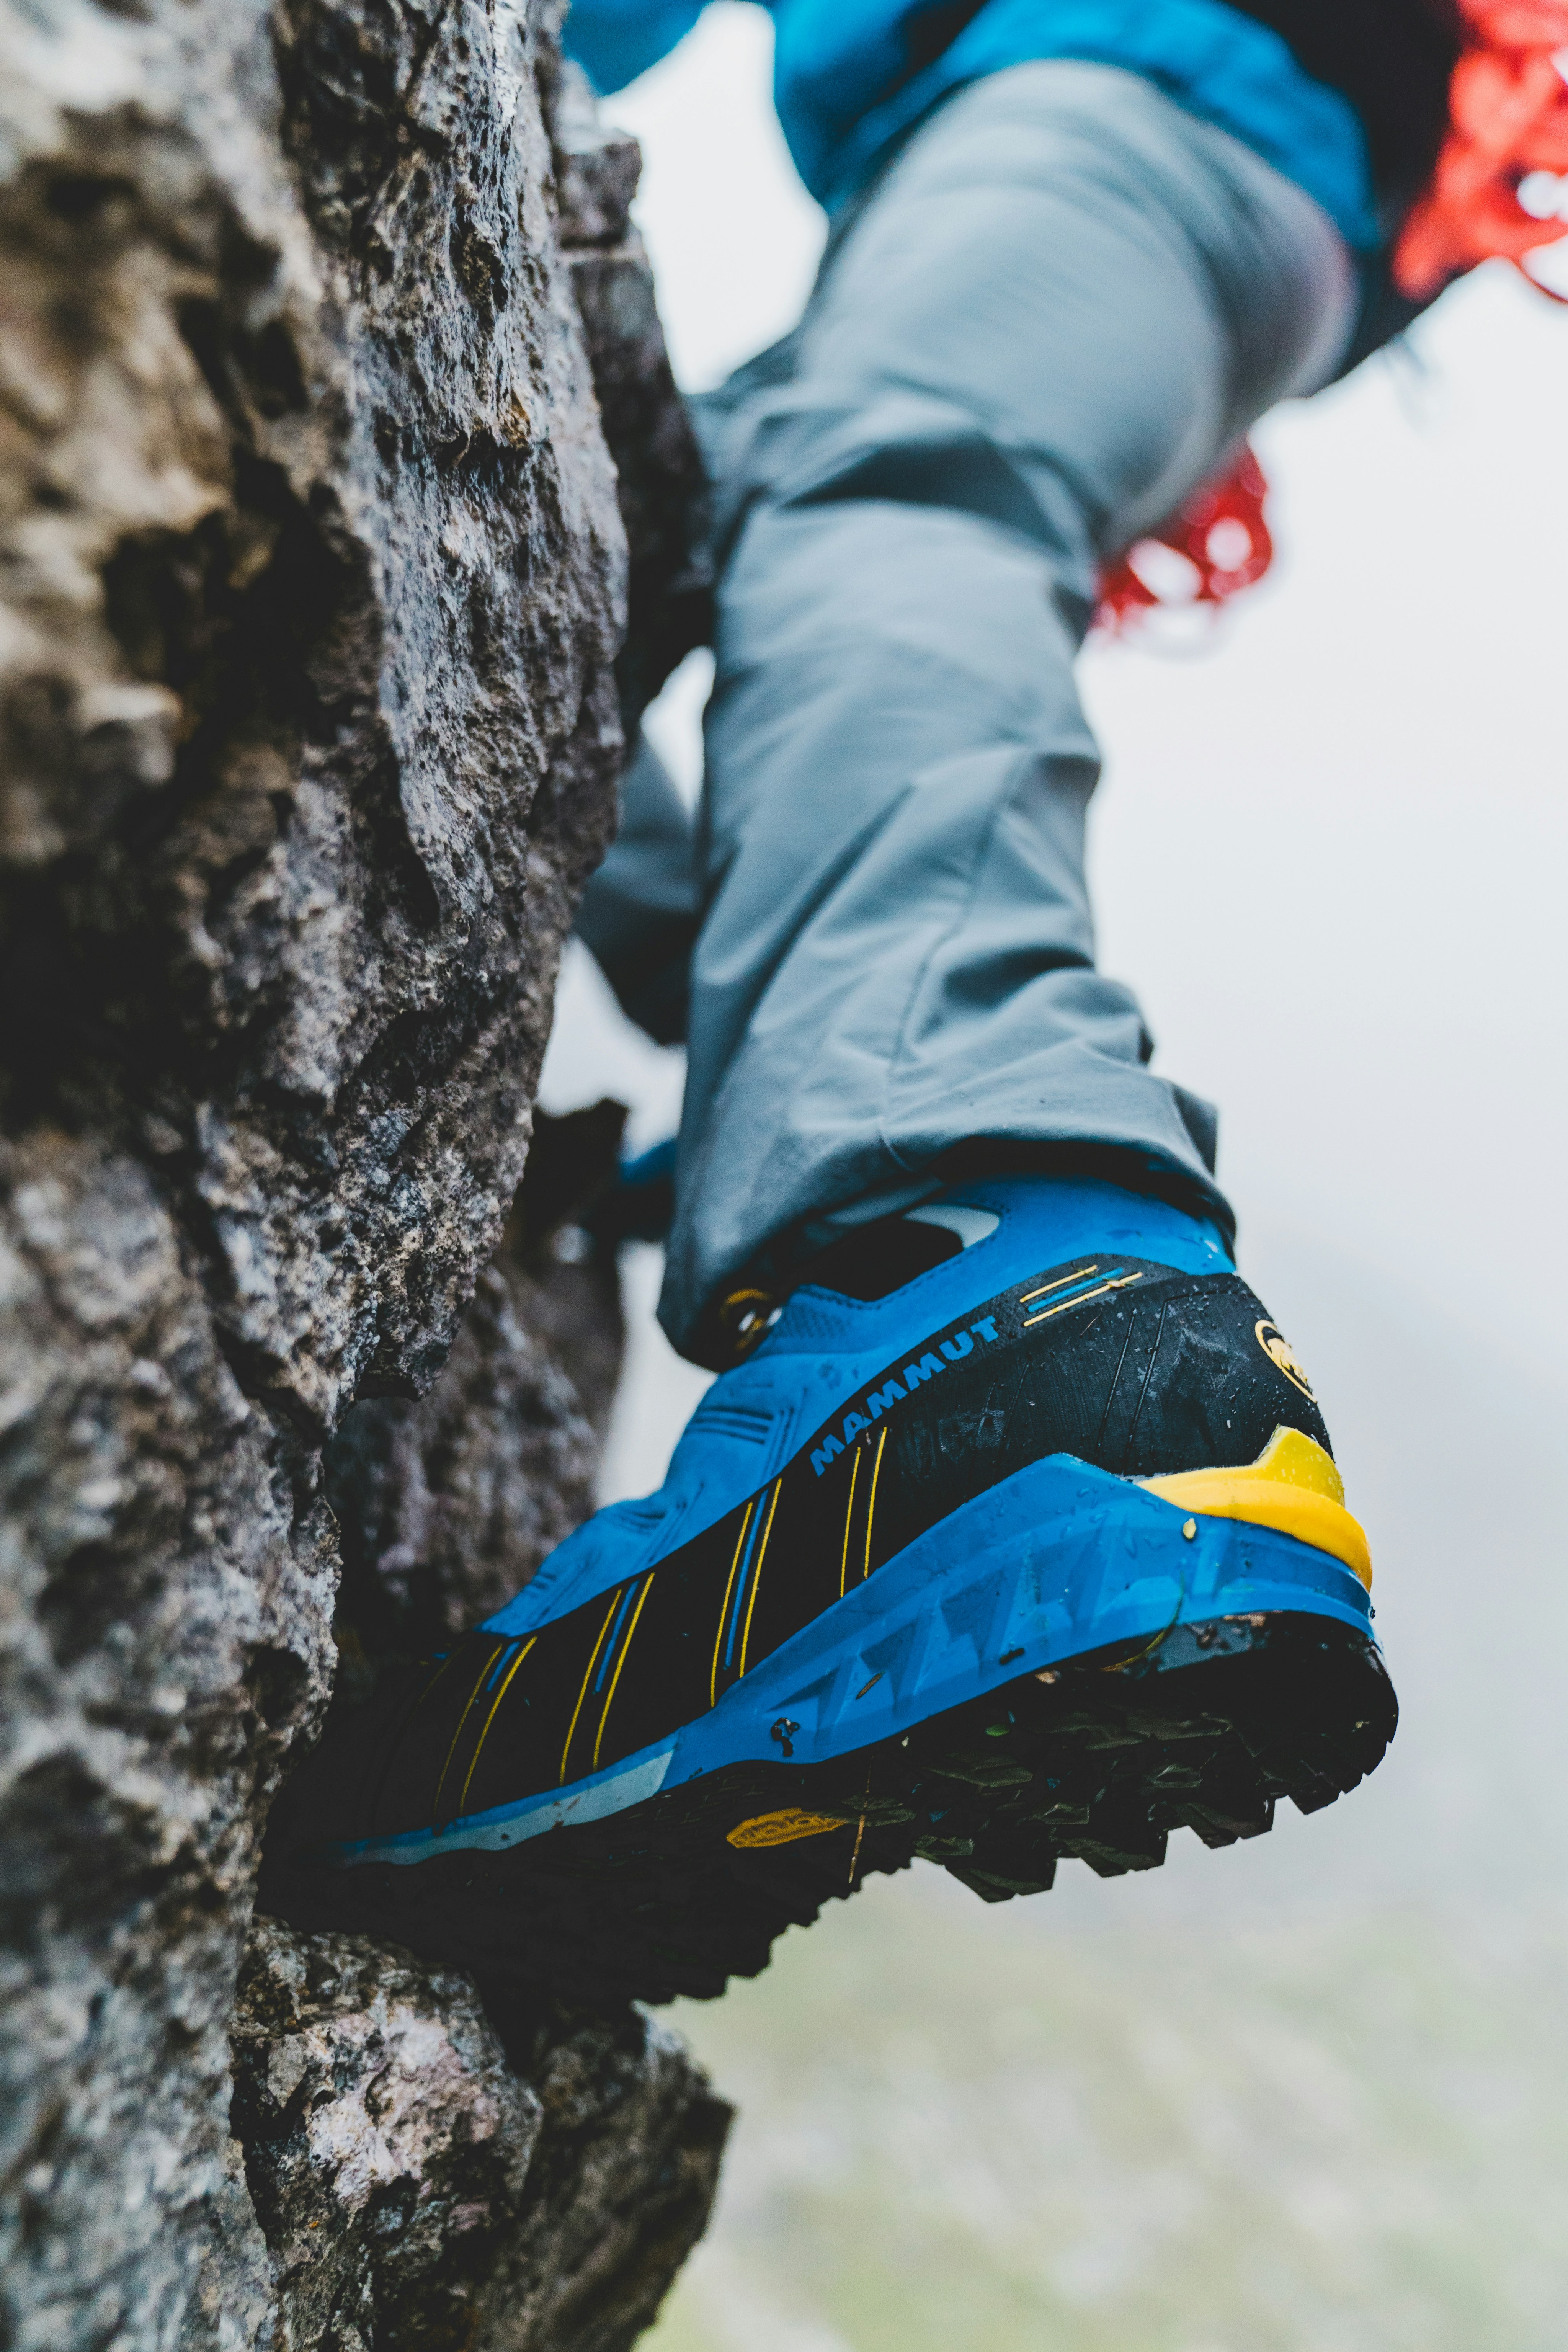 Alpine shoe on a rock.